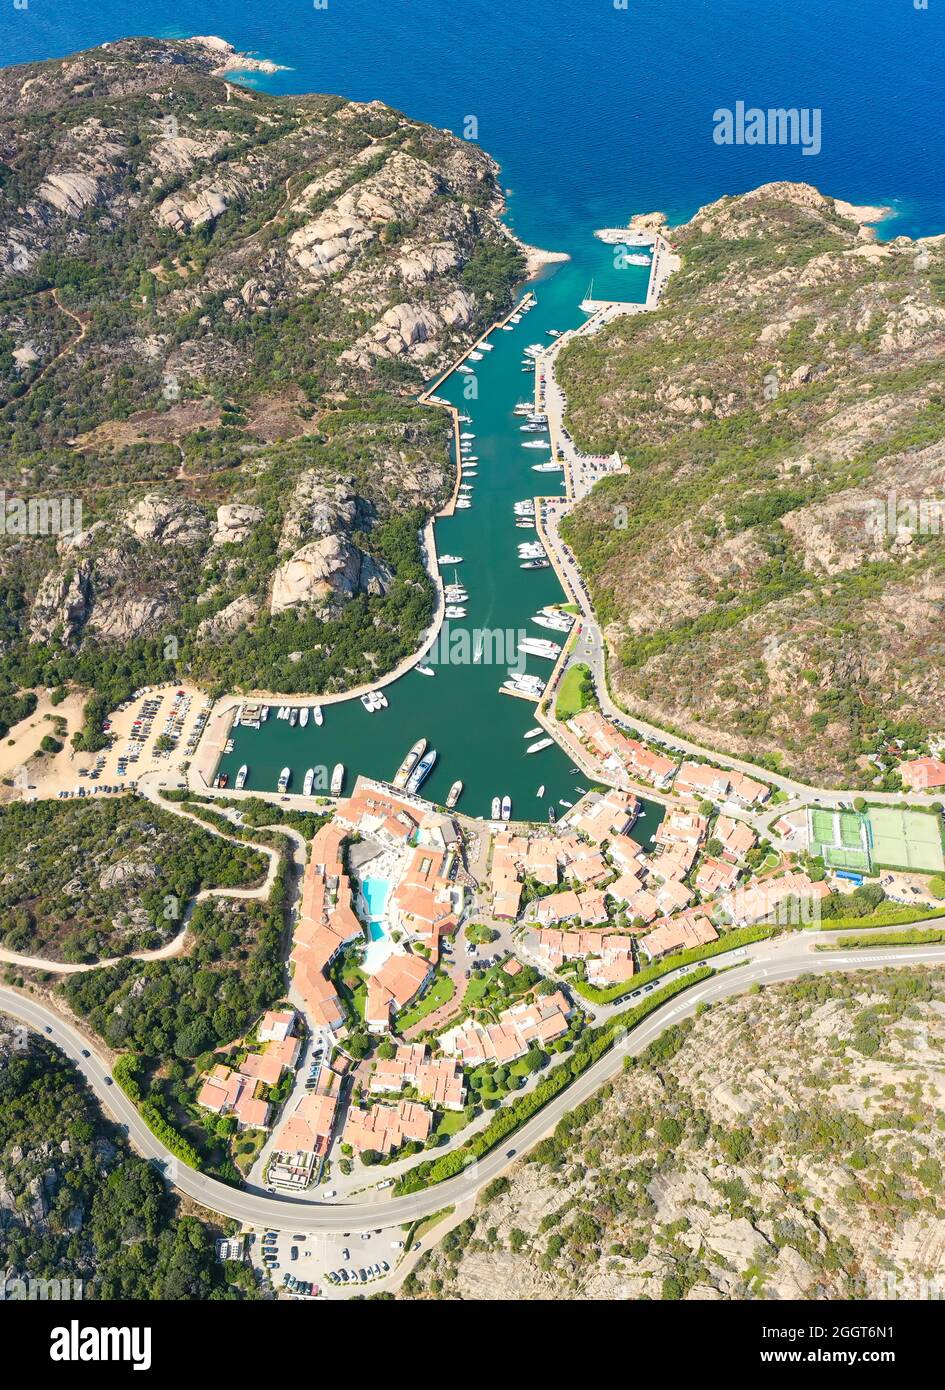 Blick von oben, atemberaubende Luftaufnahme des Dorfes Poltu Quatu mit seinem schönen Hafen voller Boote und Luxusyachten. Sardinien, Italien. Stockfoto